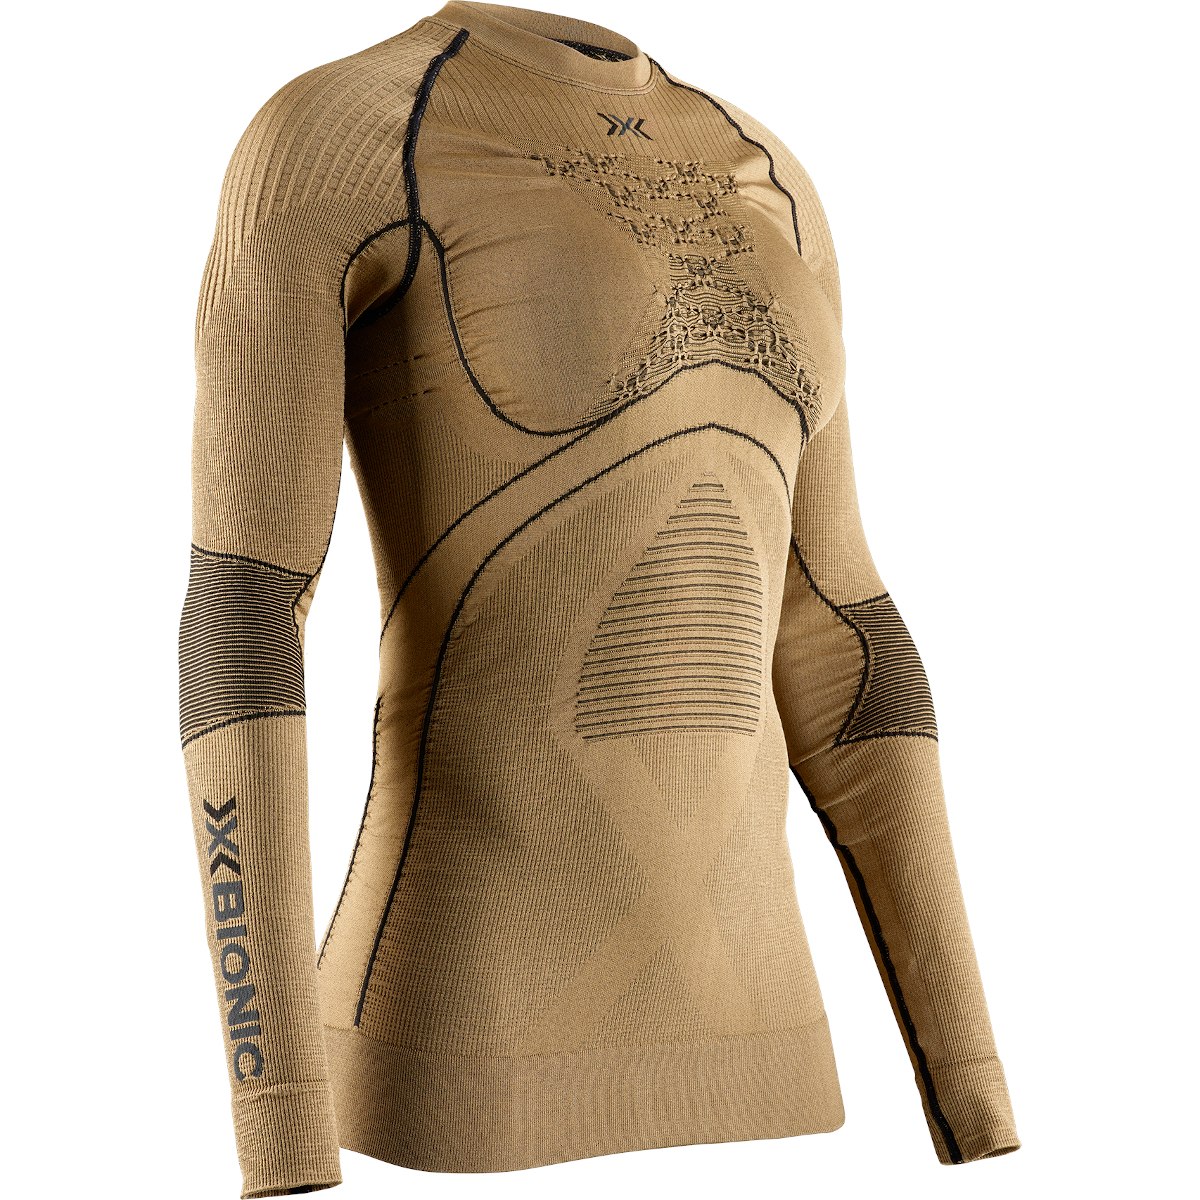 Productfoto van X-Bionic Radiactor 4.0 Onderhemd met lange mouwen Dames - gold/black